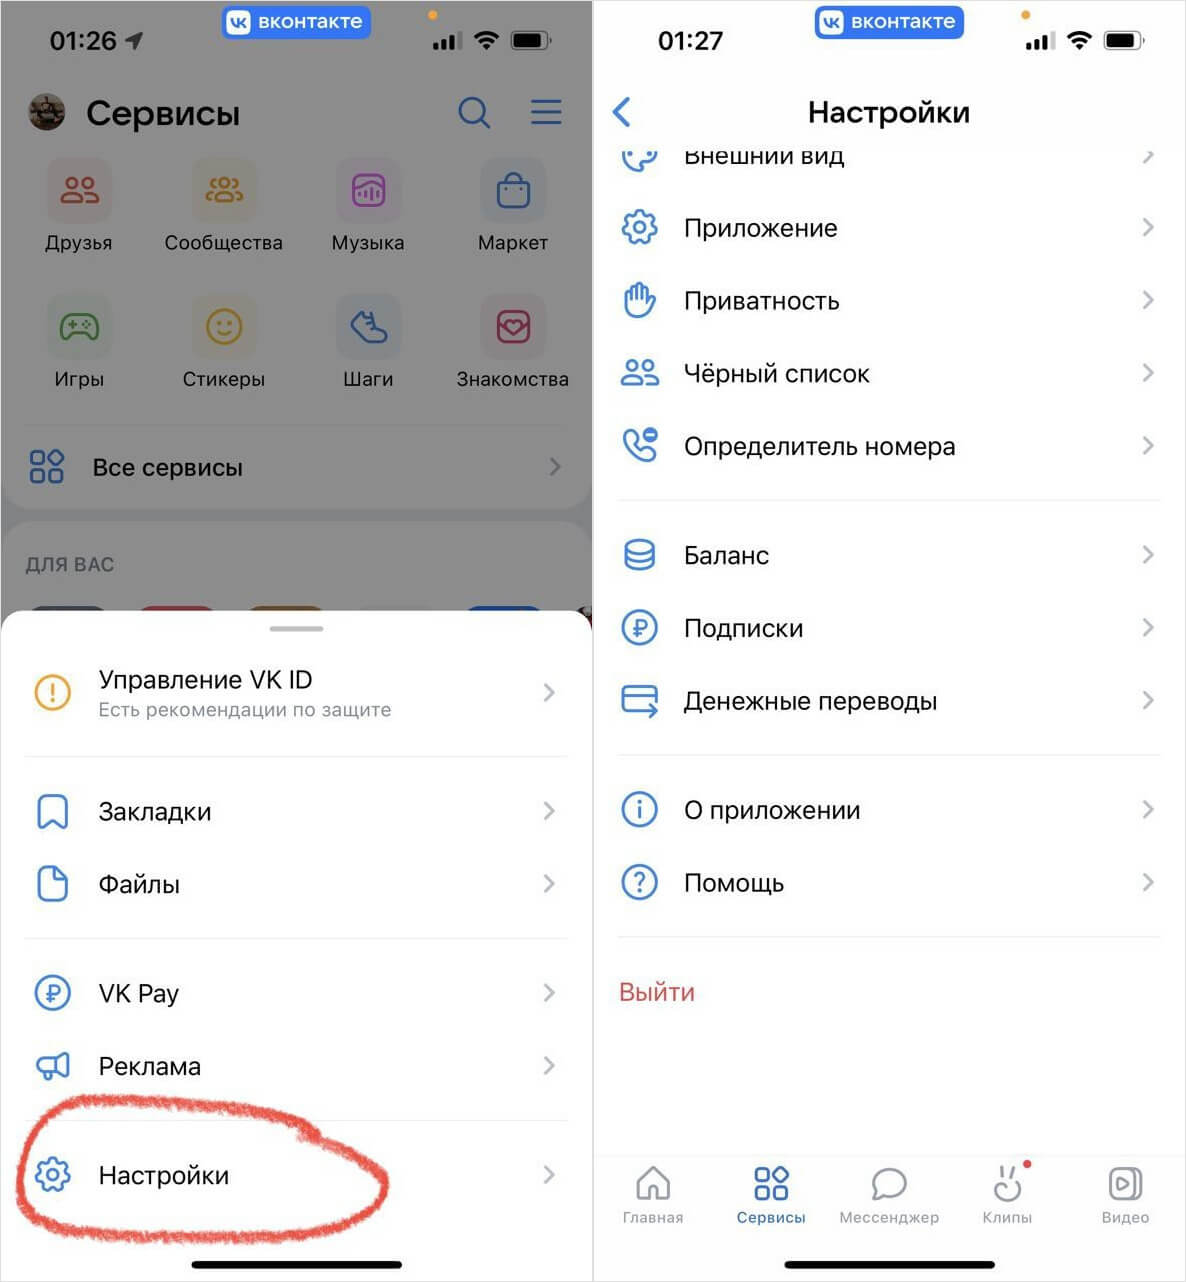 Как получить установки мобильного приложения в Одноклассниках — Полезные статьи от myTarget